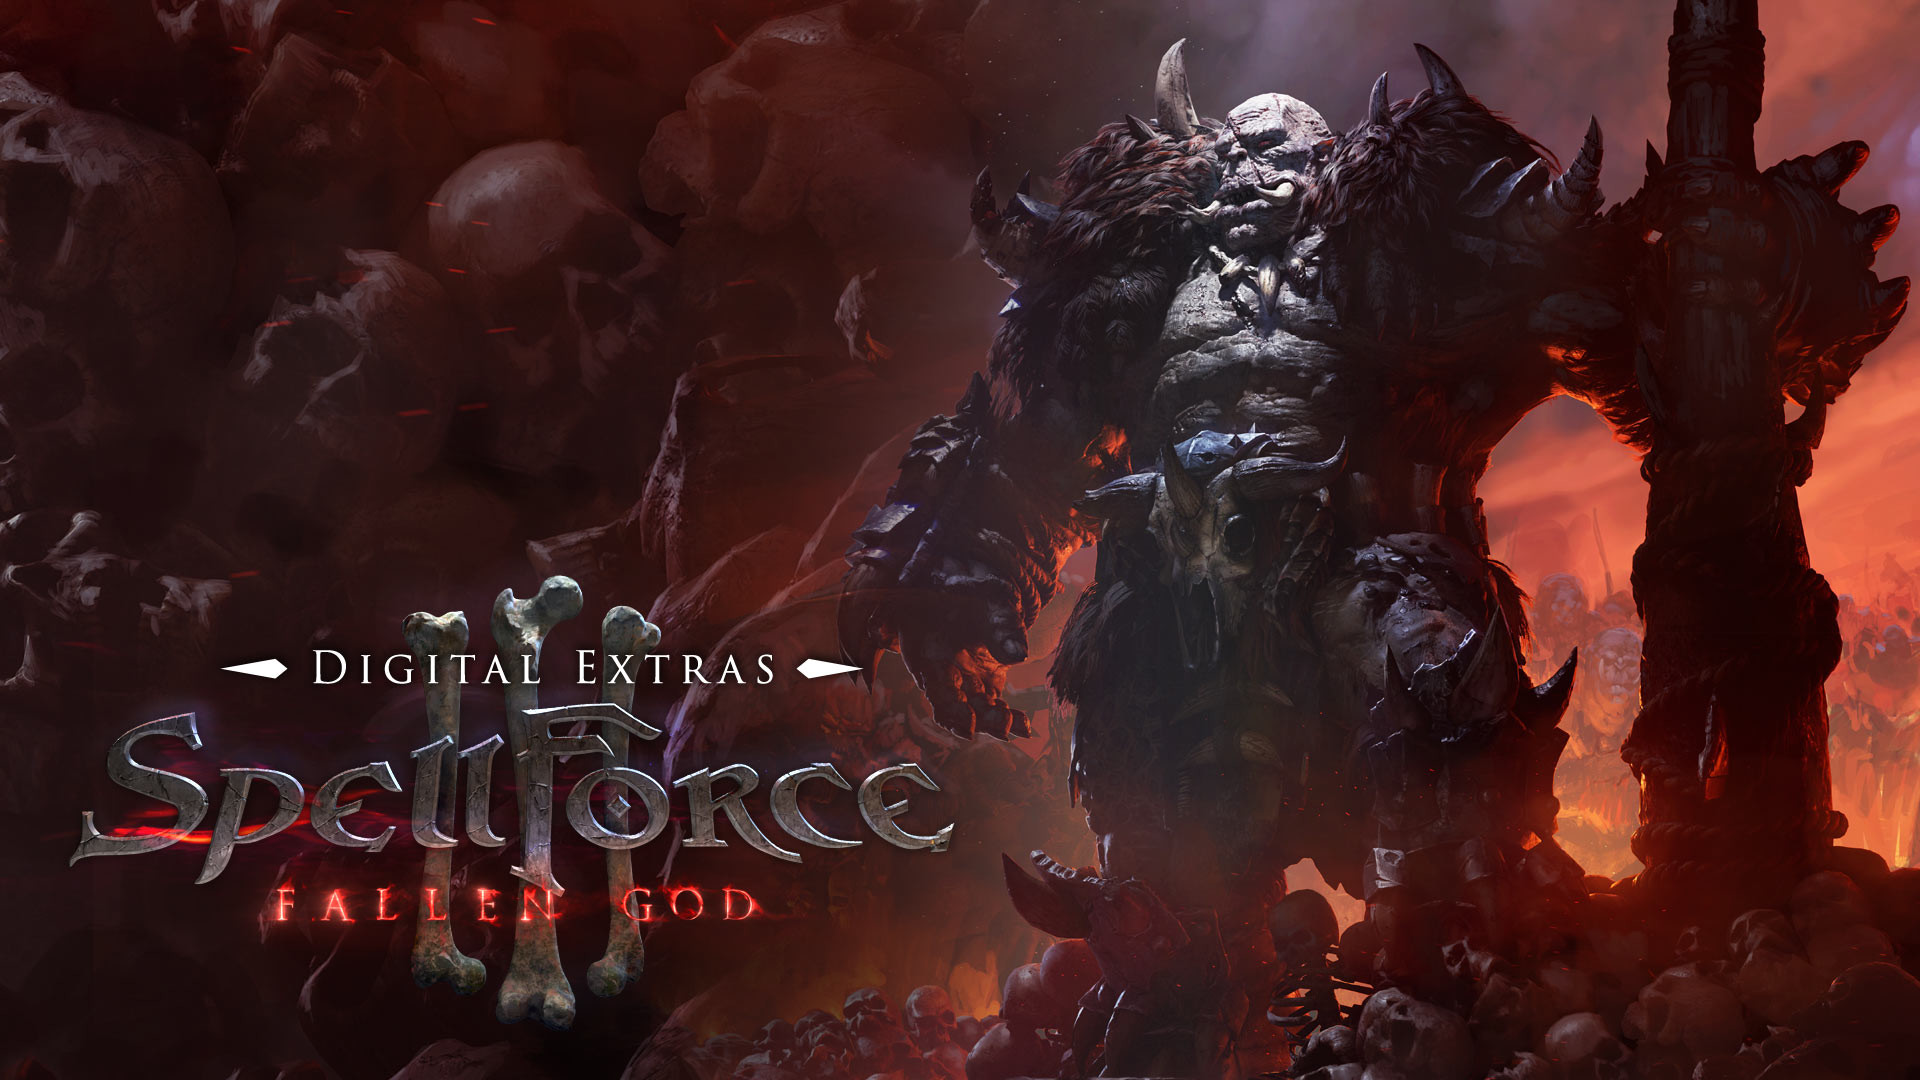 SpellForce 3: Fallen God Digital Extras Featured Screenshot #1